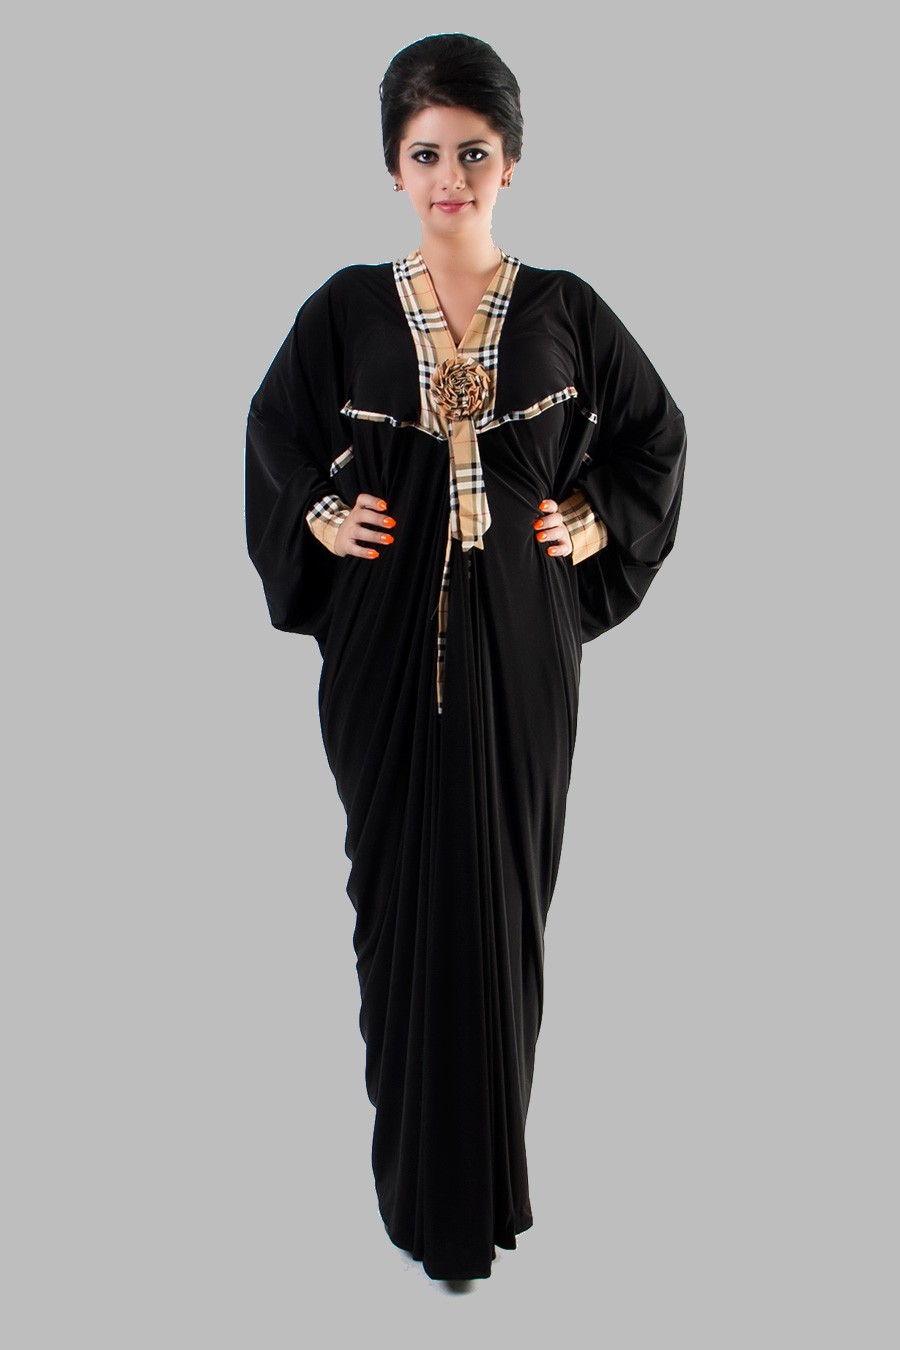 Embroidered Abaya Designs 2013 | Islamic Abaya Dress Fashion 2013-14 ...